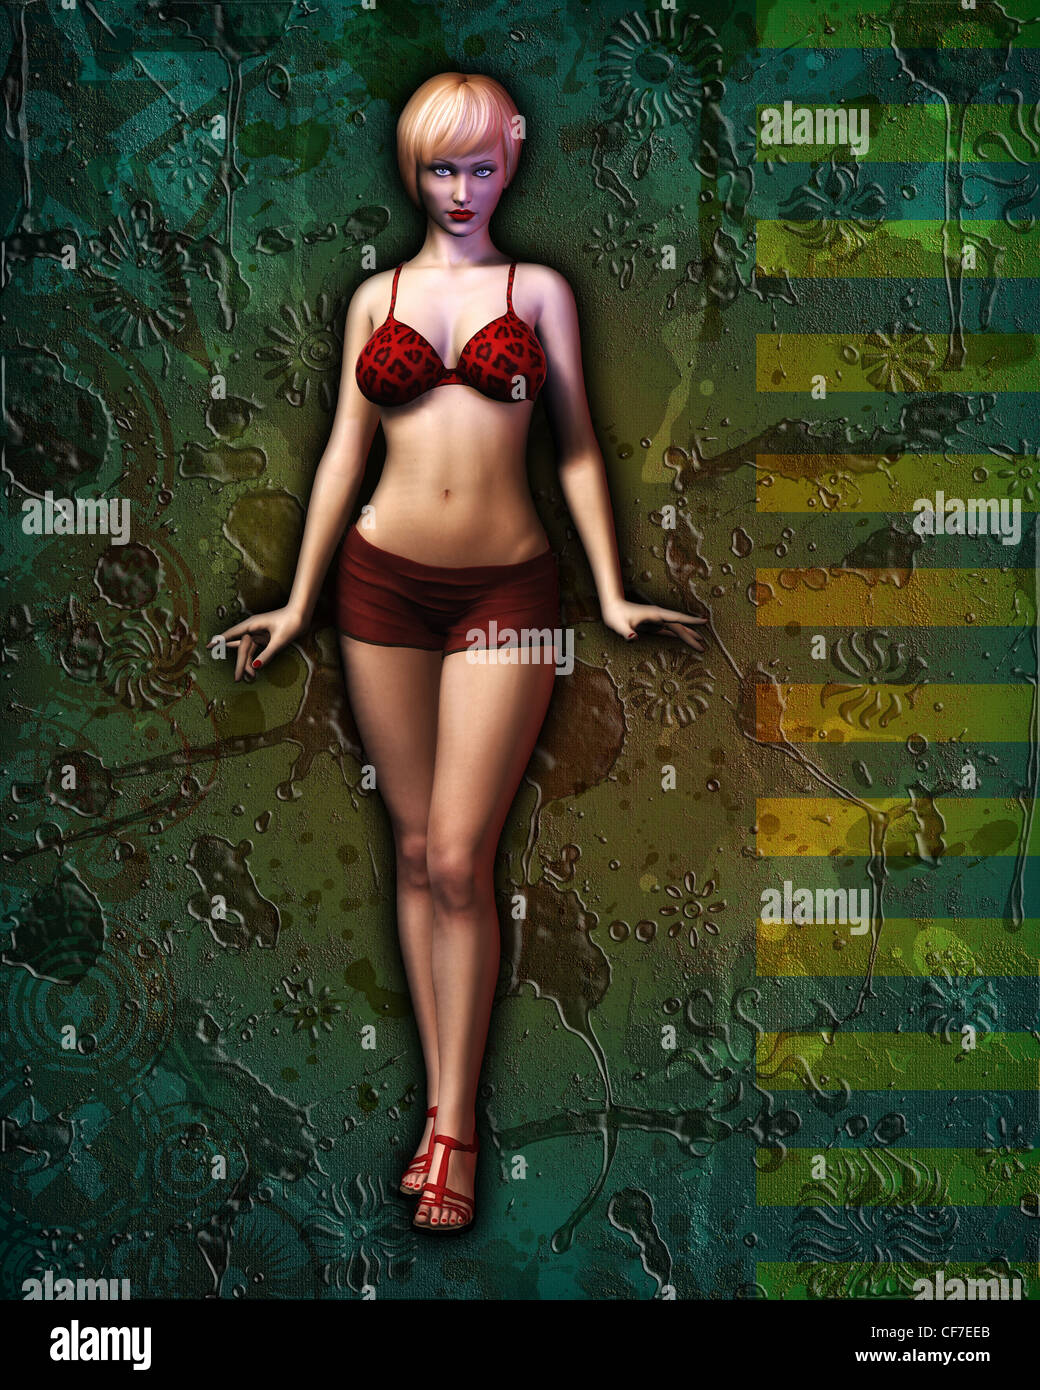 Ilustración digital de un ilustrado, sexy chica en bikini posando contra grunge resumen antecedentes artísticos. Foto de stock